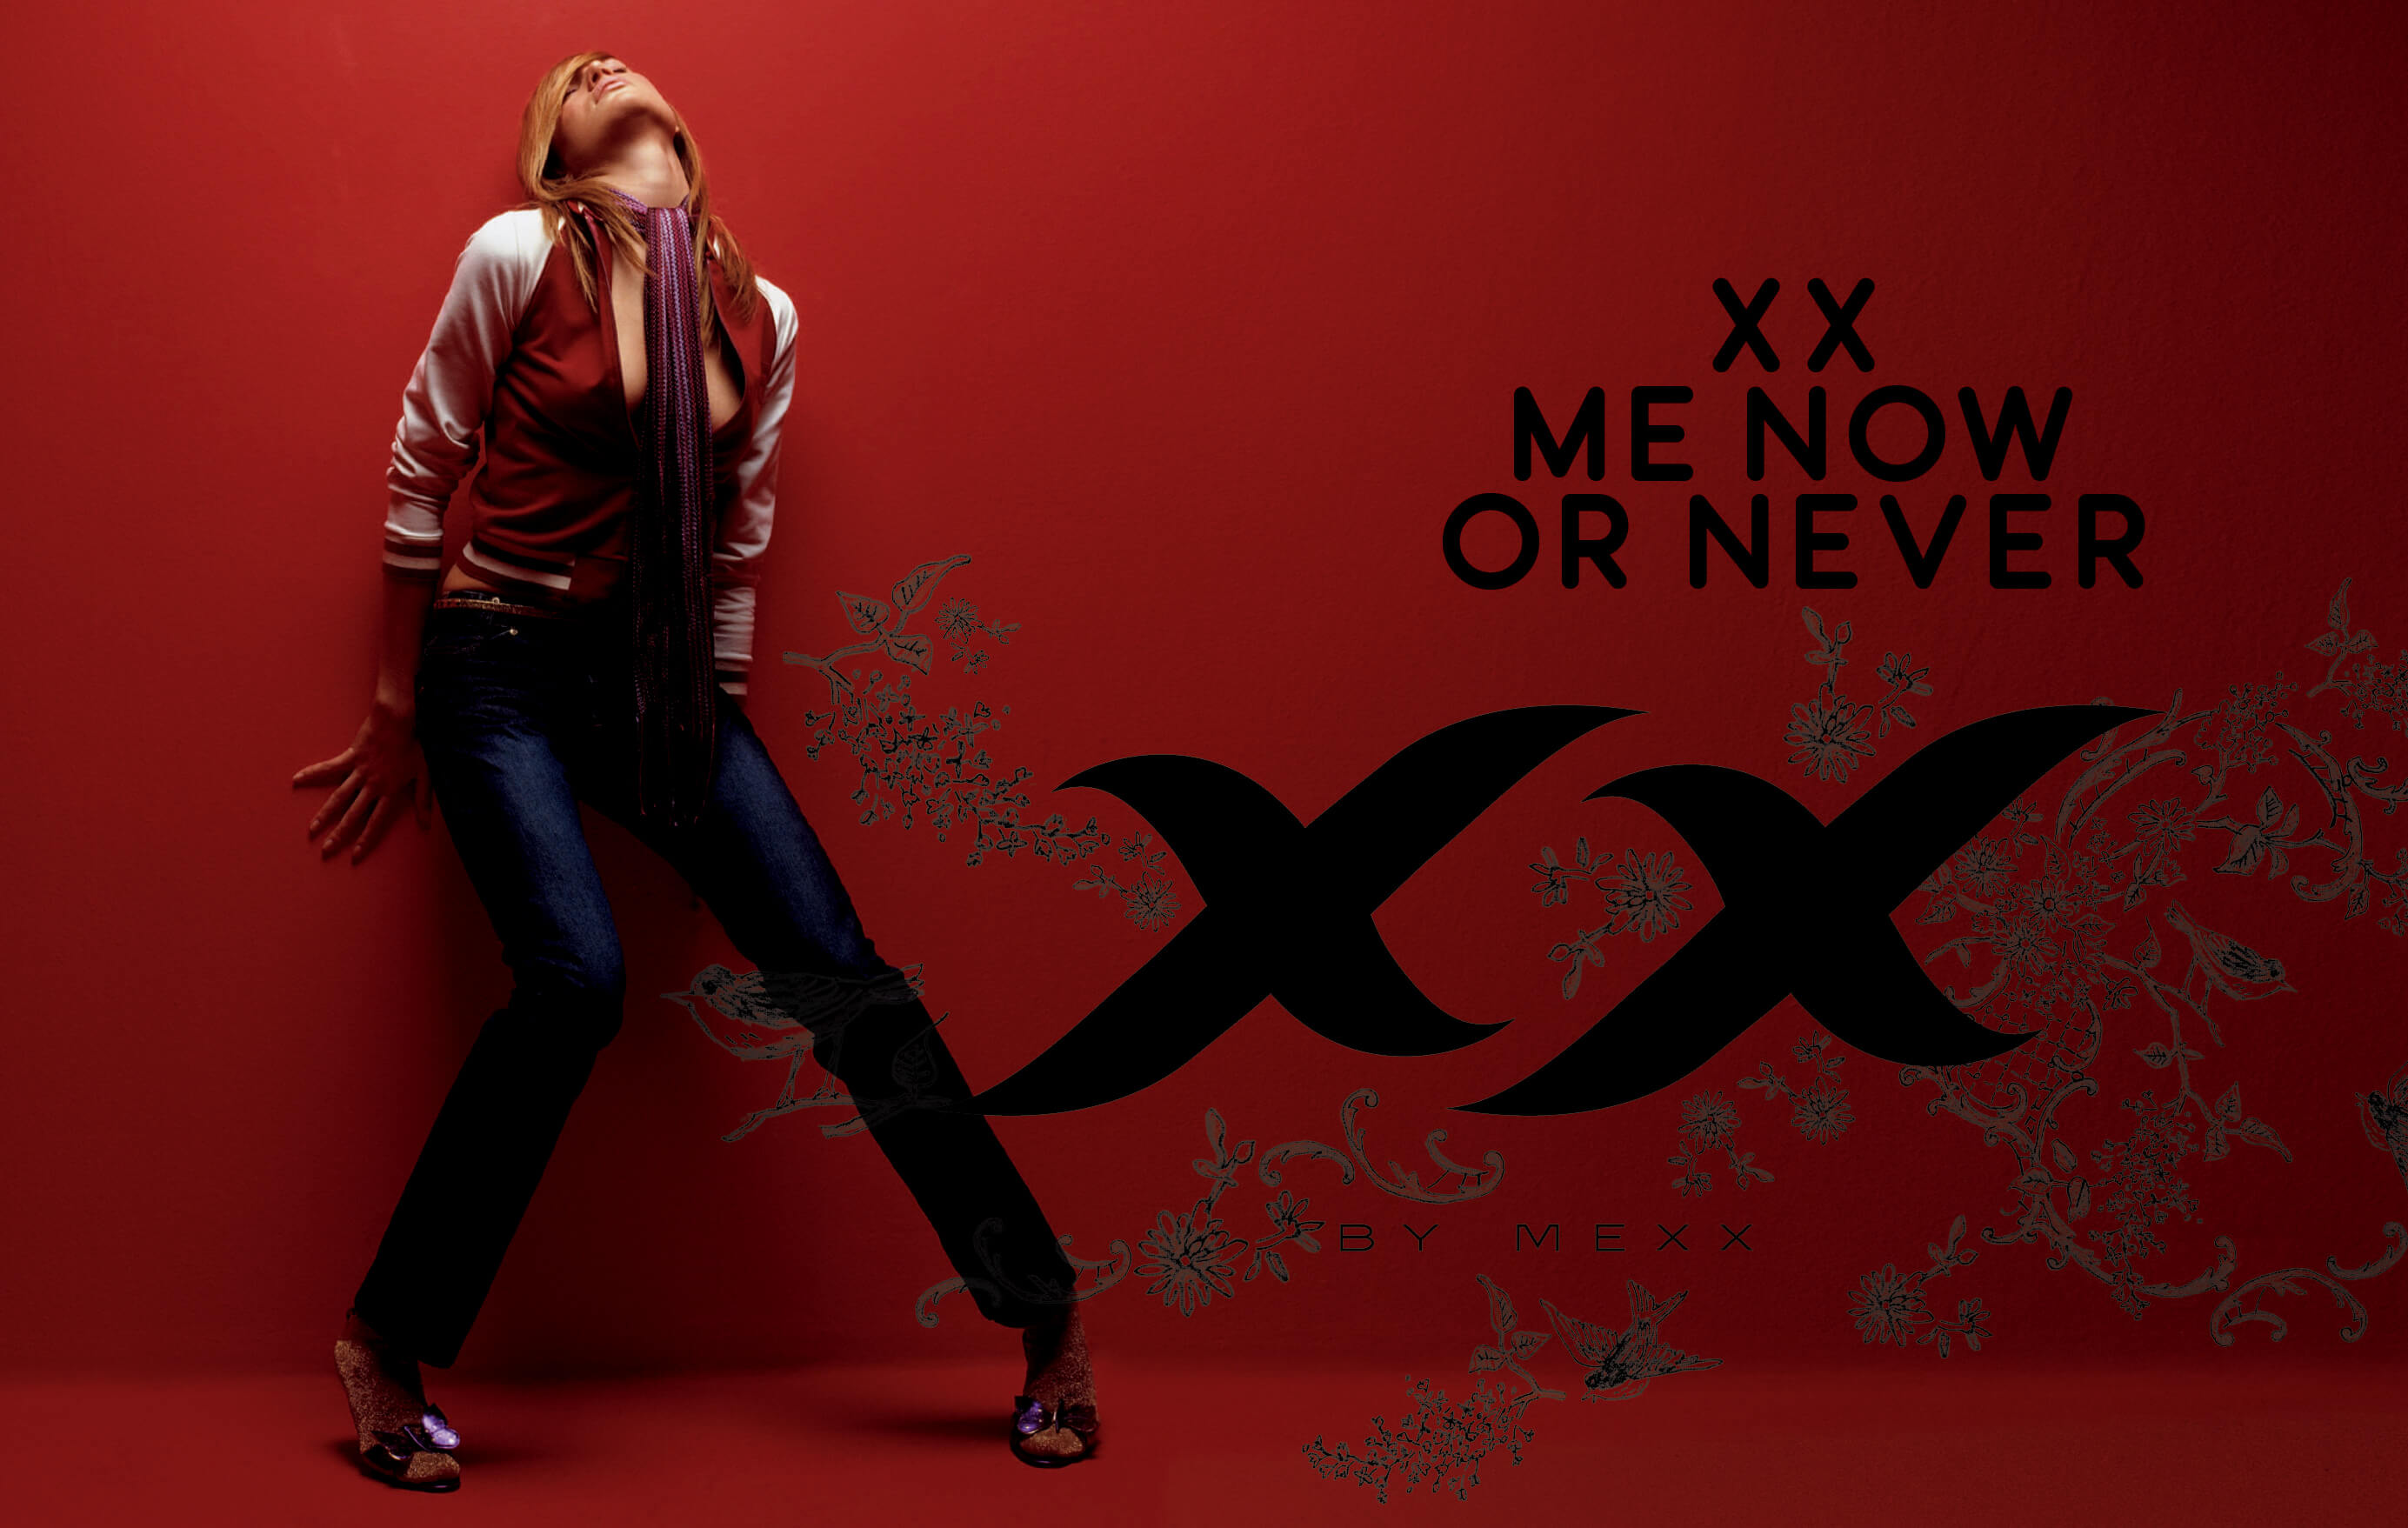 xx by mexx